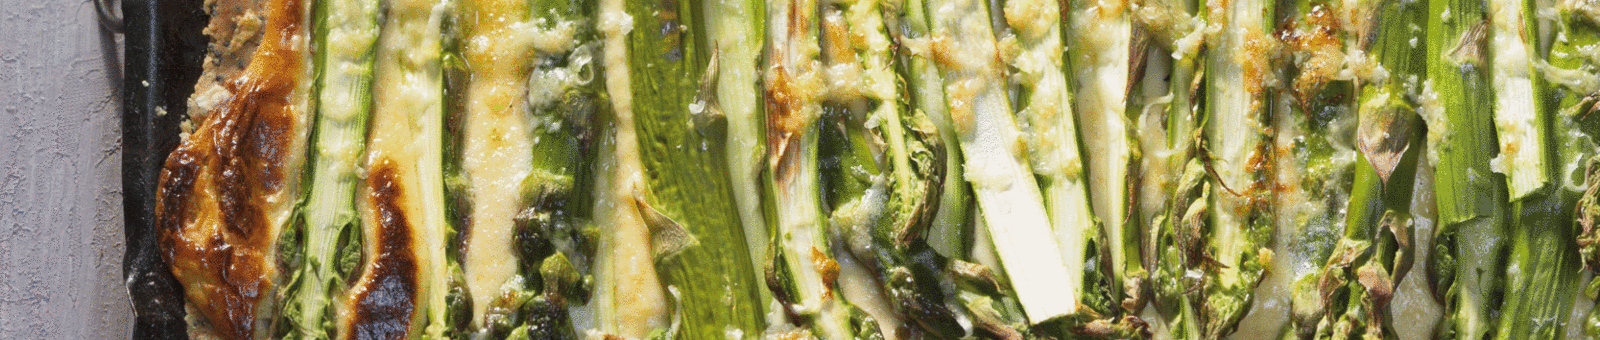     Asparagus and curd tart 